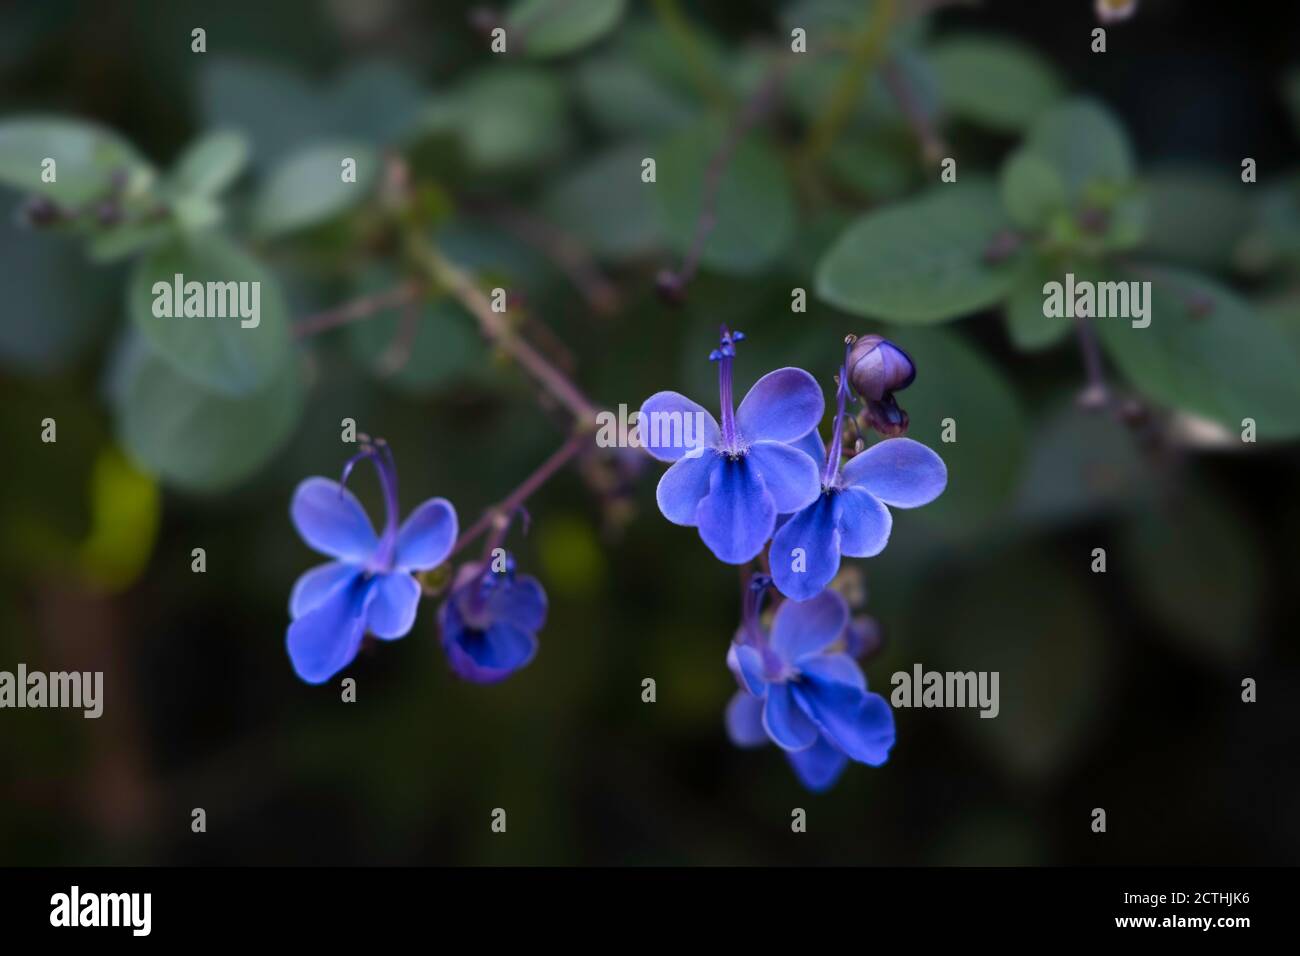 Clerodendrum Ugandense oder Blue Butterfly Bush Flower ist eine Tub-Pflanze mit samtigen Blättern. Konzentrieren Sie sich auf die blauen Blumen Stockfoto